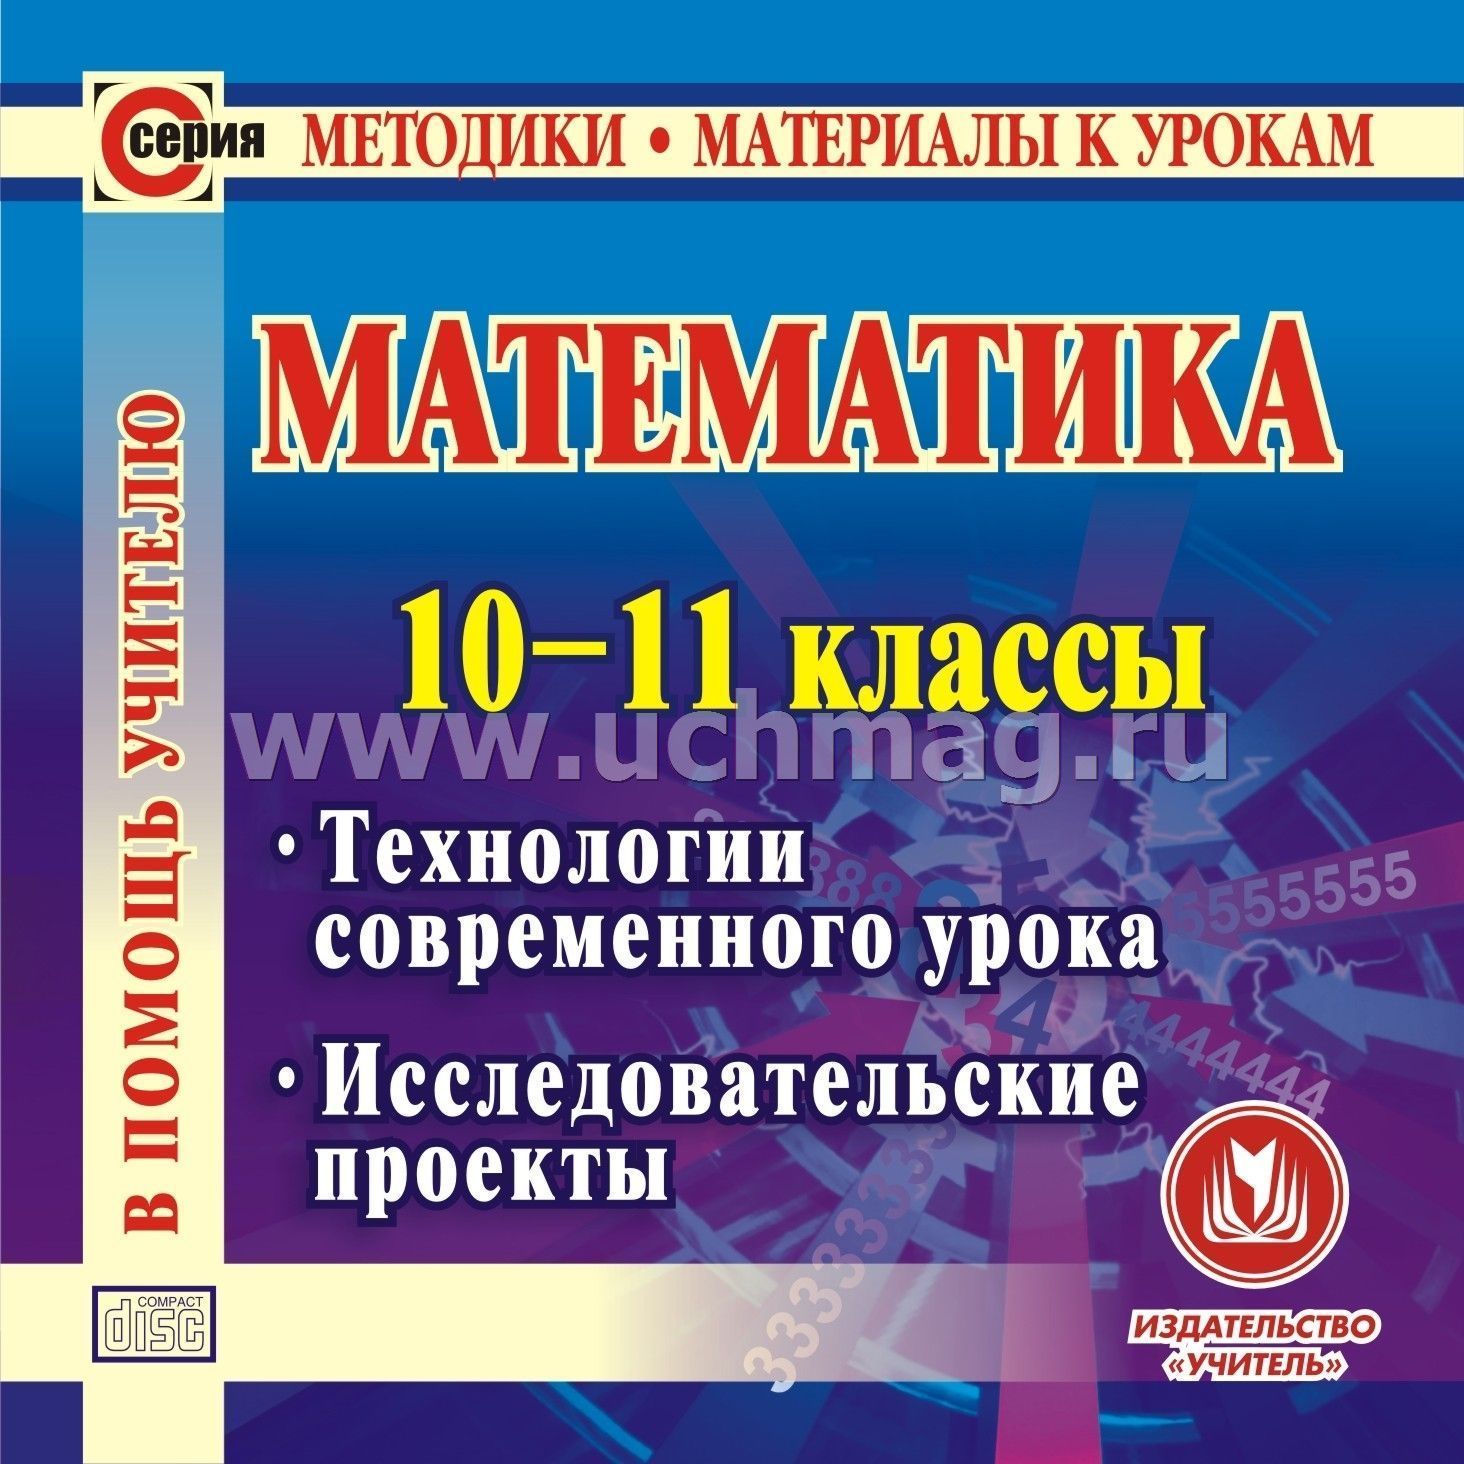 Конспекты уроков по математике 10-11 классах по математике